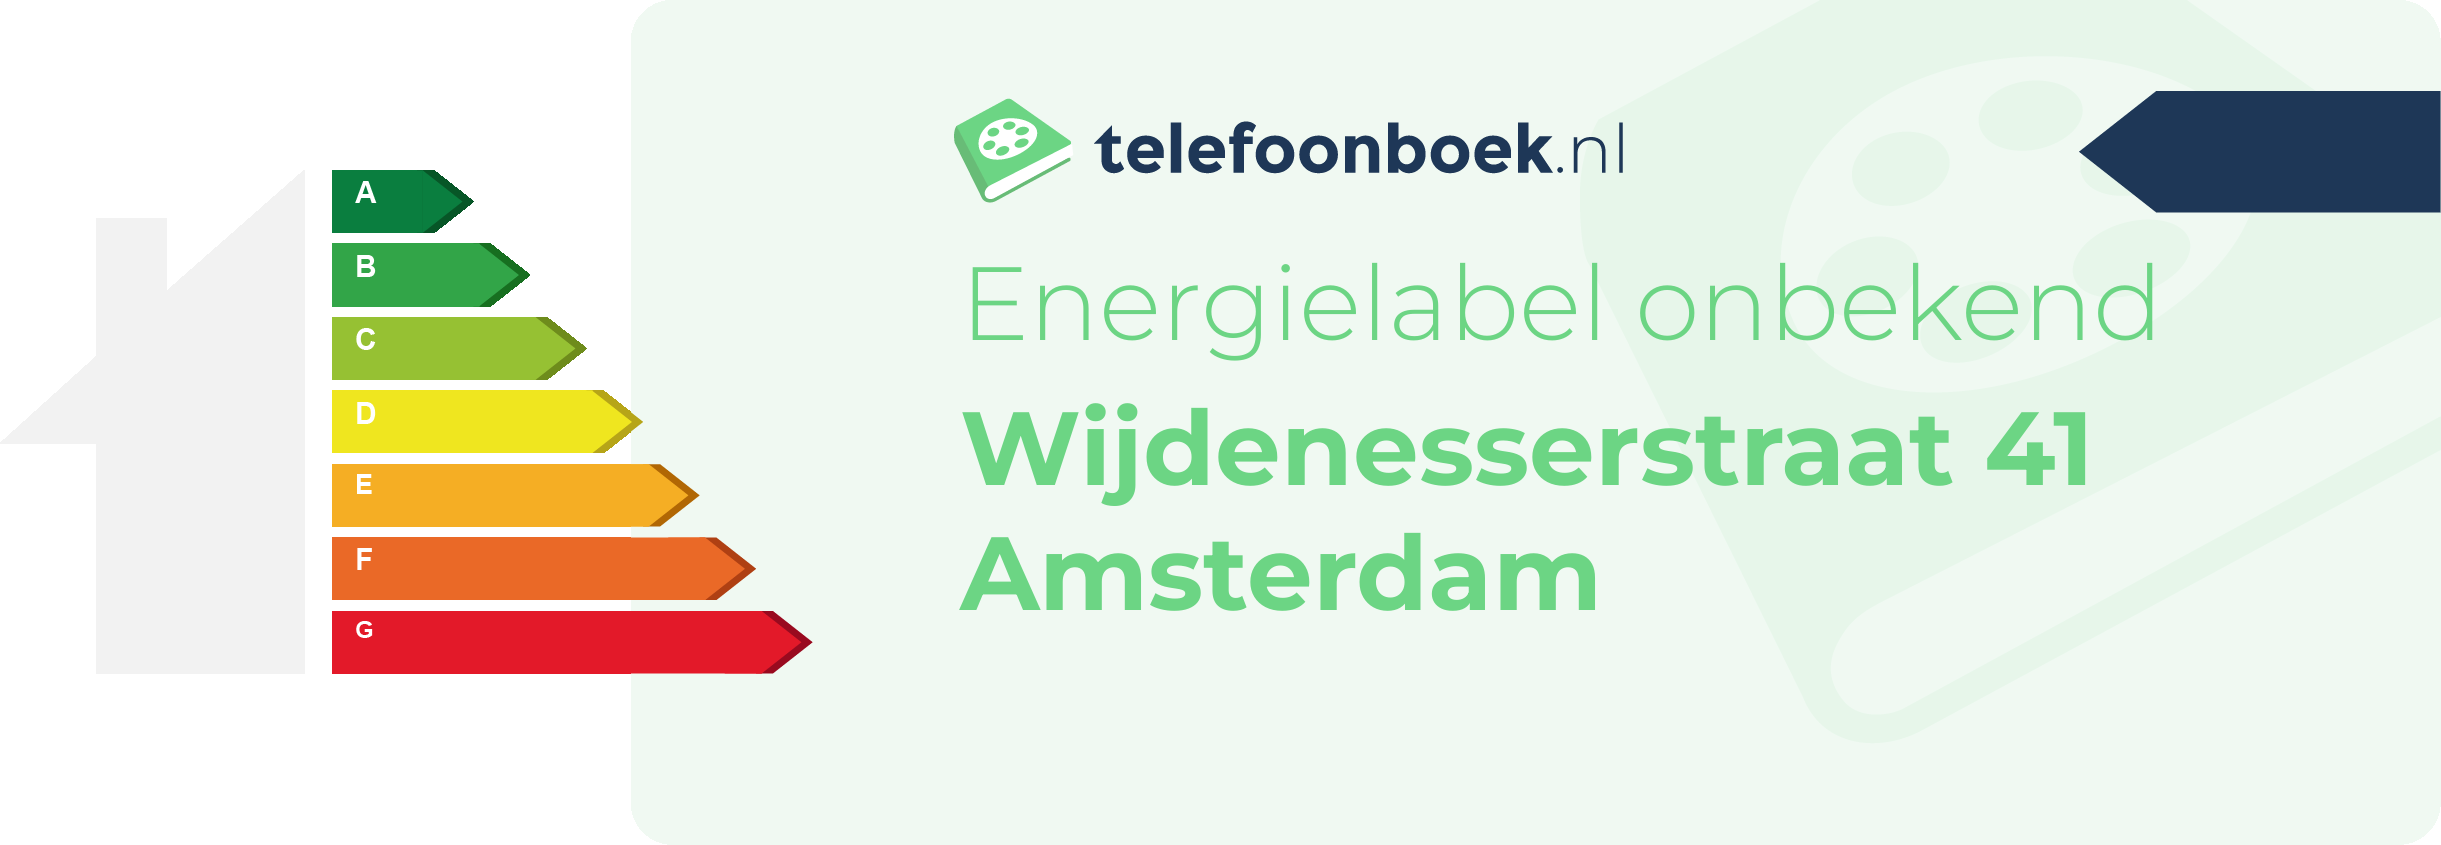 Energielabel Wijdenesserstraat 41 Amsterdam